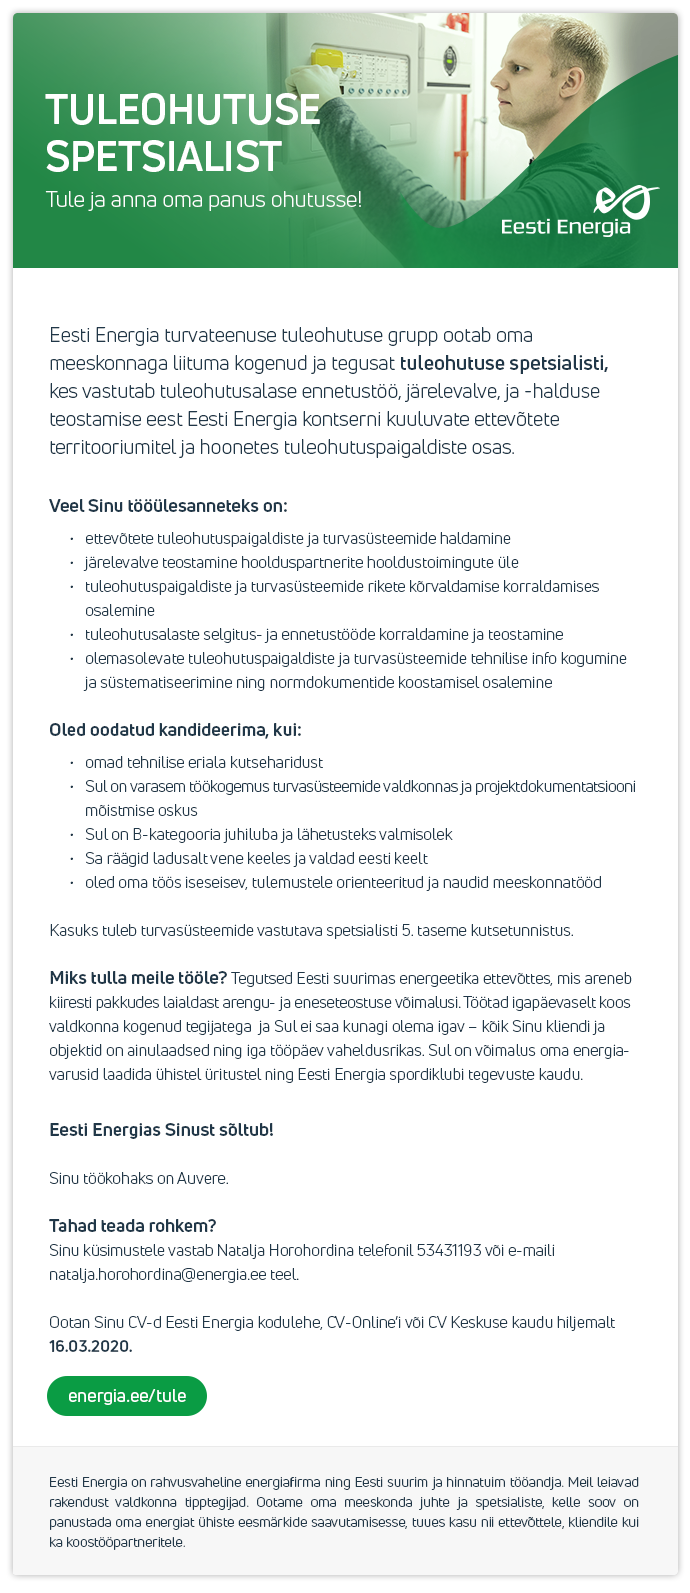 Eesti Energia AS TULEOHUTUSE SPETSIALIST